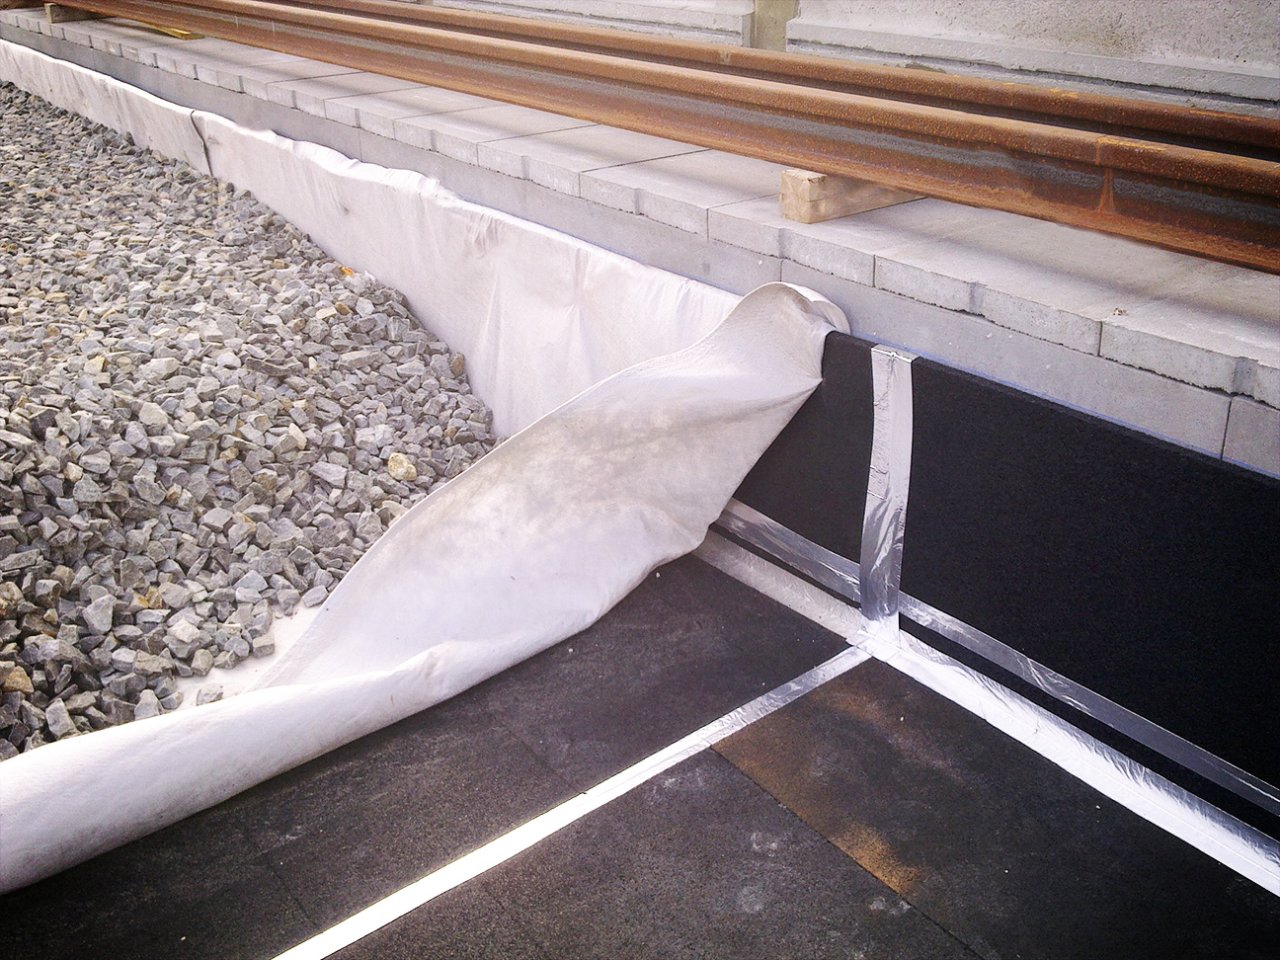 Billede afmMåtter lavet af et vibrationsdæmpende materiale lagt ud under ballasten, mens man installerer en ny skinne til tog.